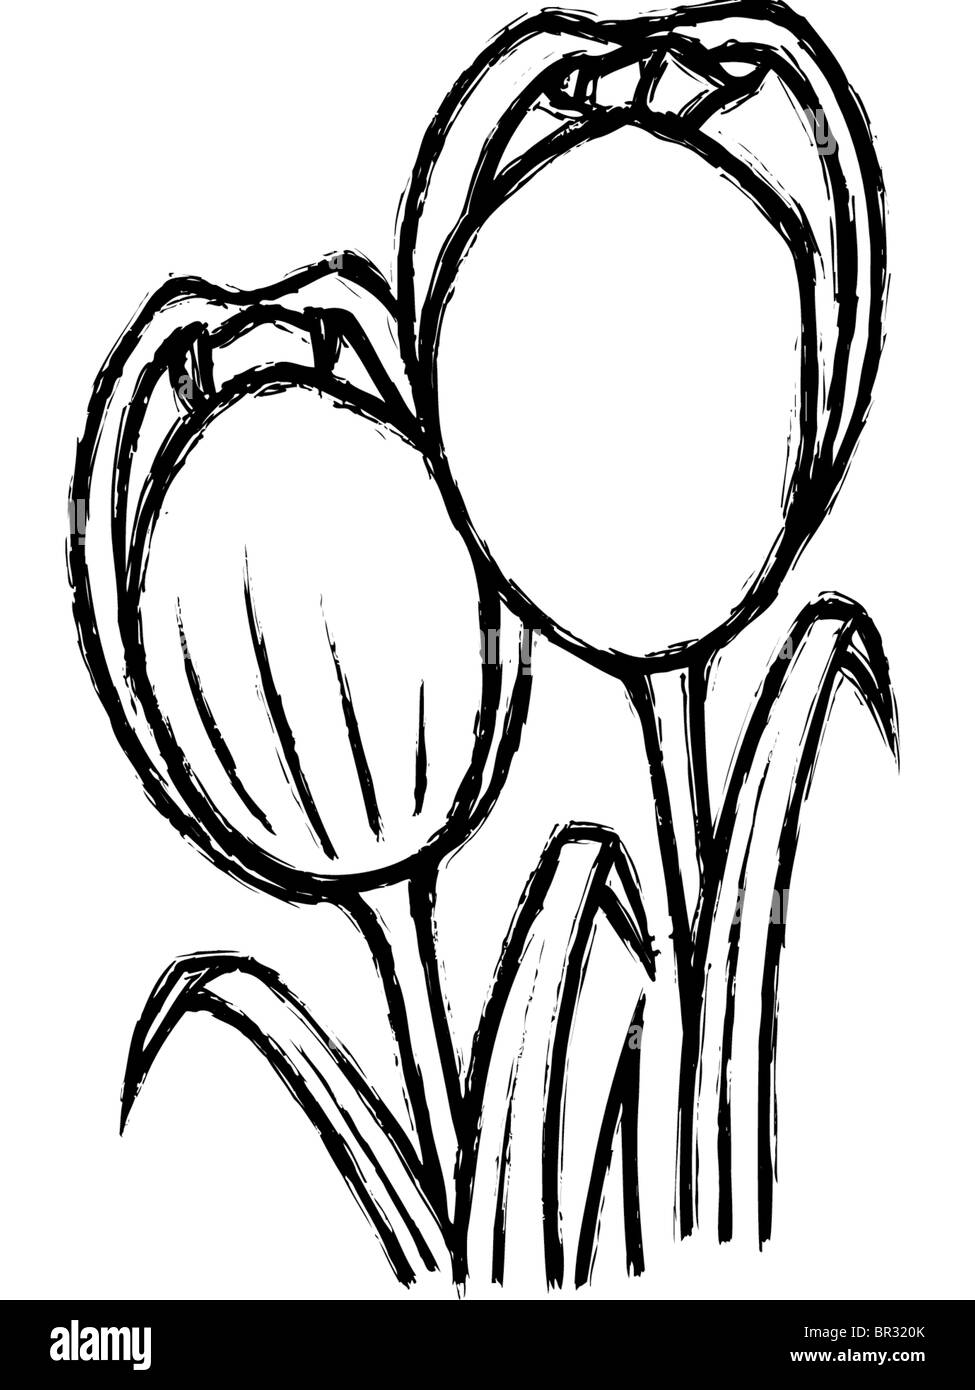 Ein schwarz-weiß Zeichnung der Tulpen Stockfotografie - Alamy